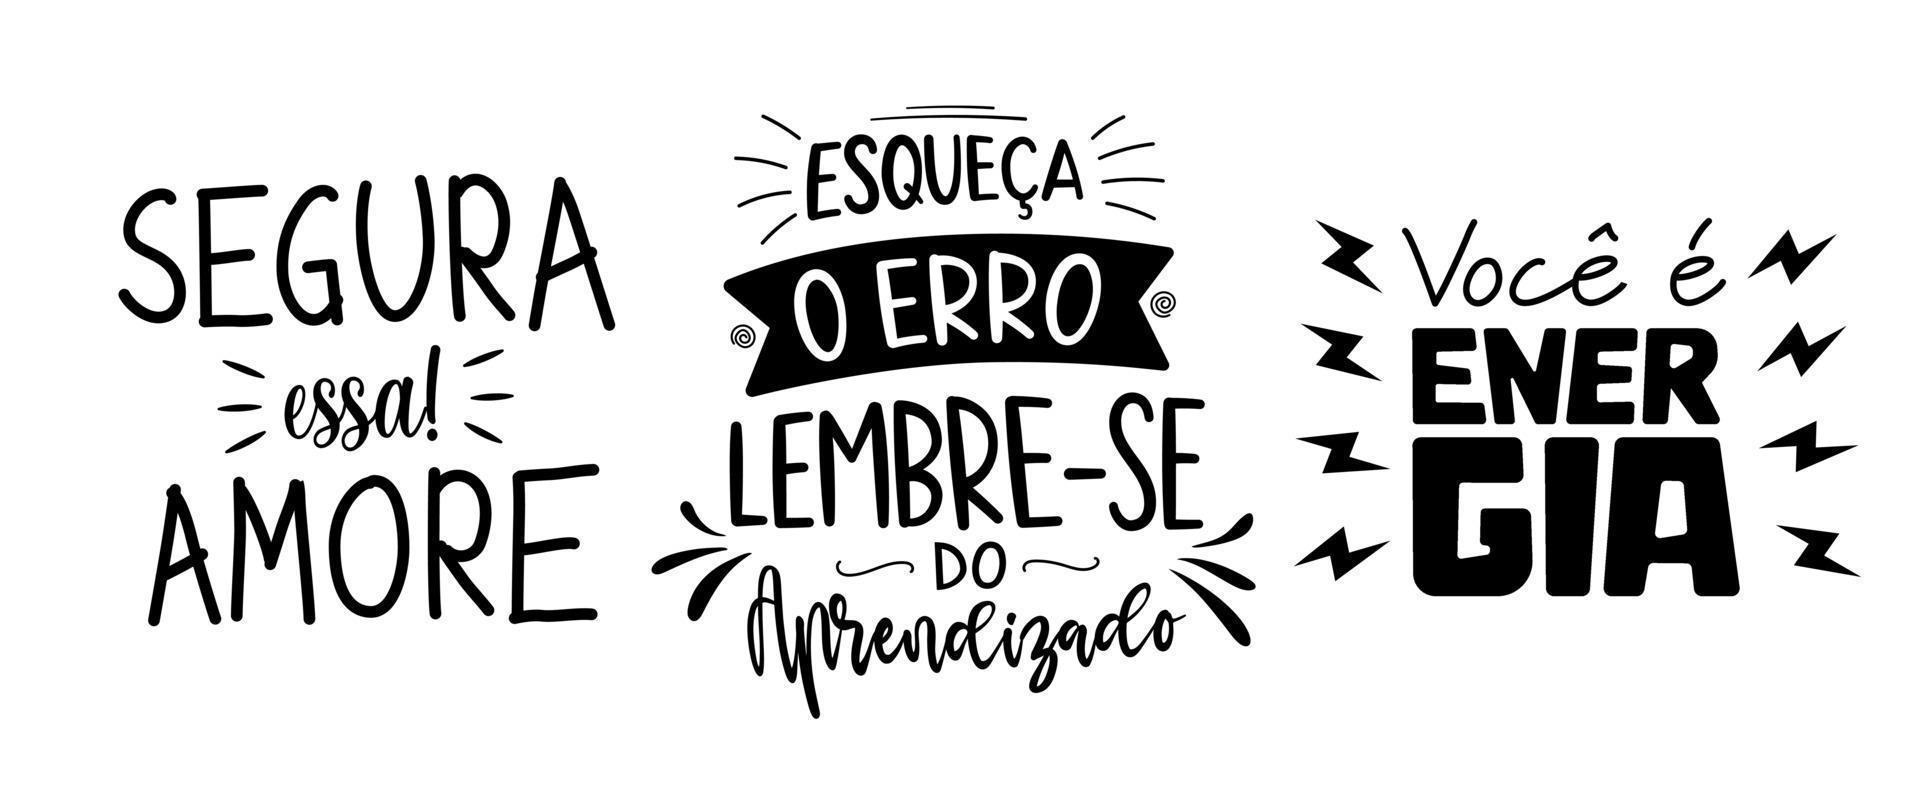 tre frasi nel brasiliano portoghese. traduzione - ottenere Questo bambino. - dimenticare errore, ricorda il lezione.- voi siamo energia. vettore